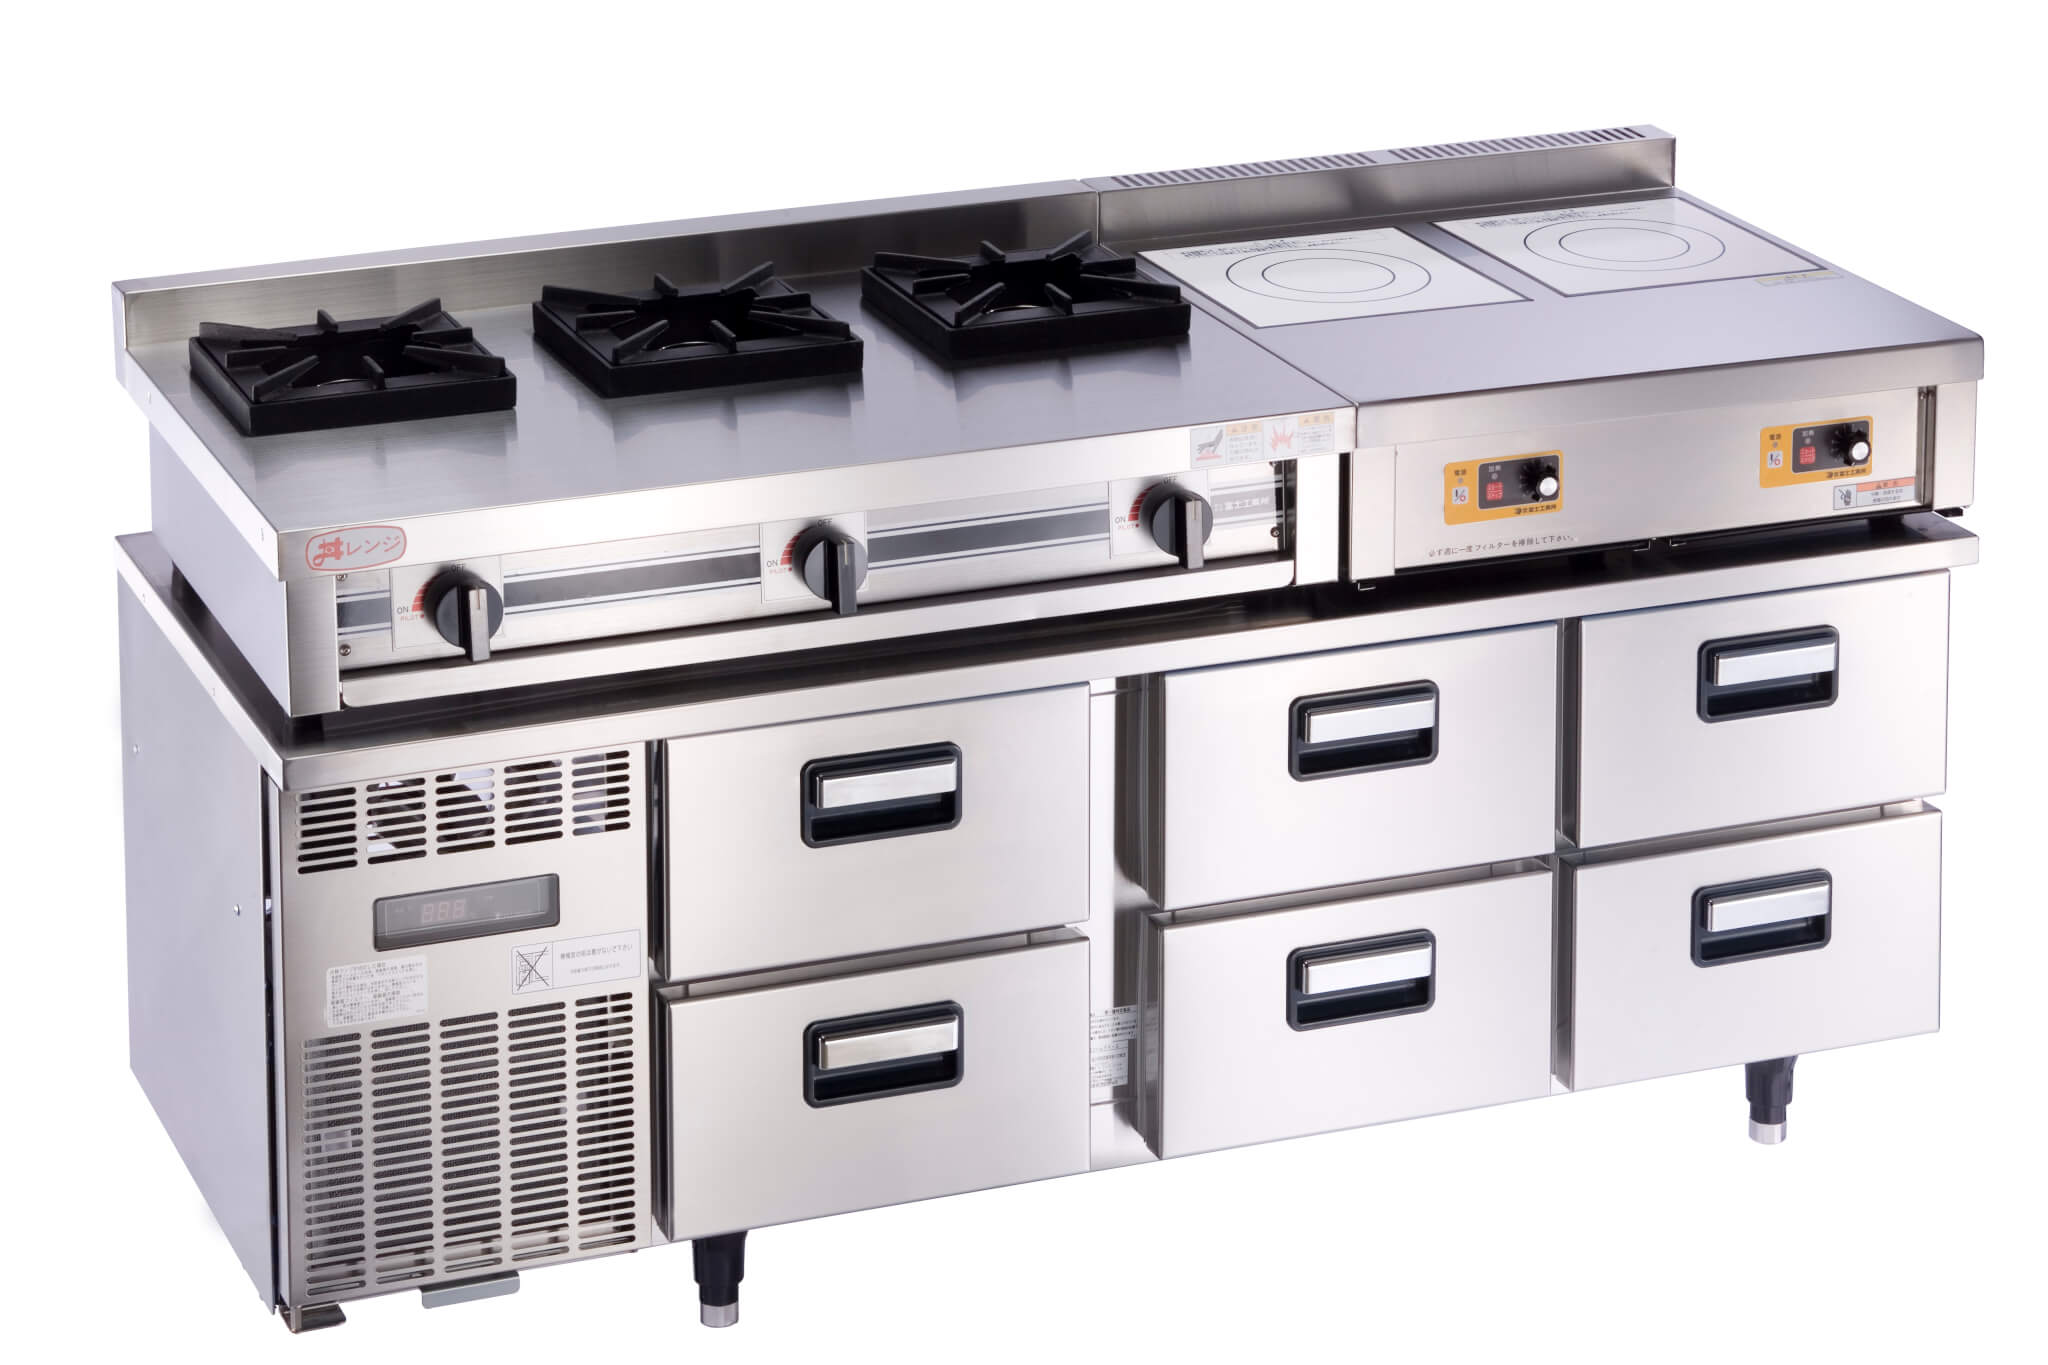 お気に入りの 業務用厨房機器のテンポスまな板 ヤマケン 積層オールカラーマナ板 M150A 1500×540×21 ブルー 送料別